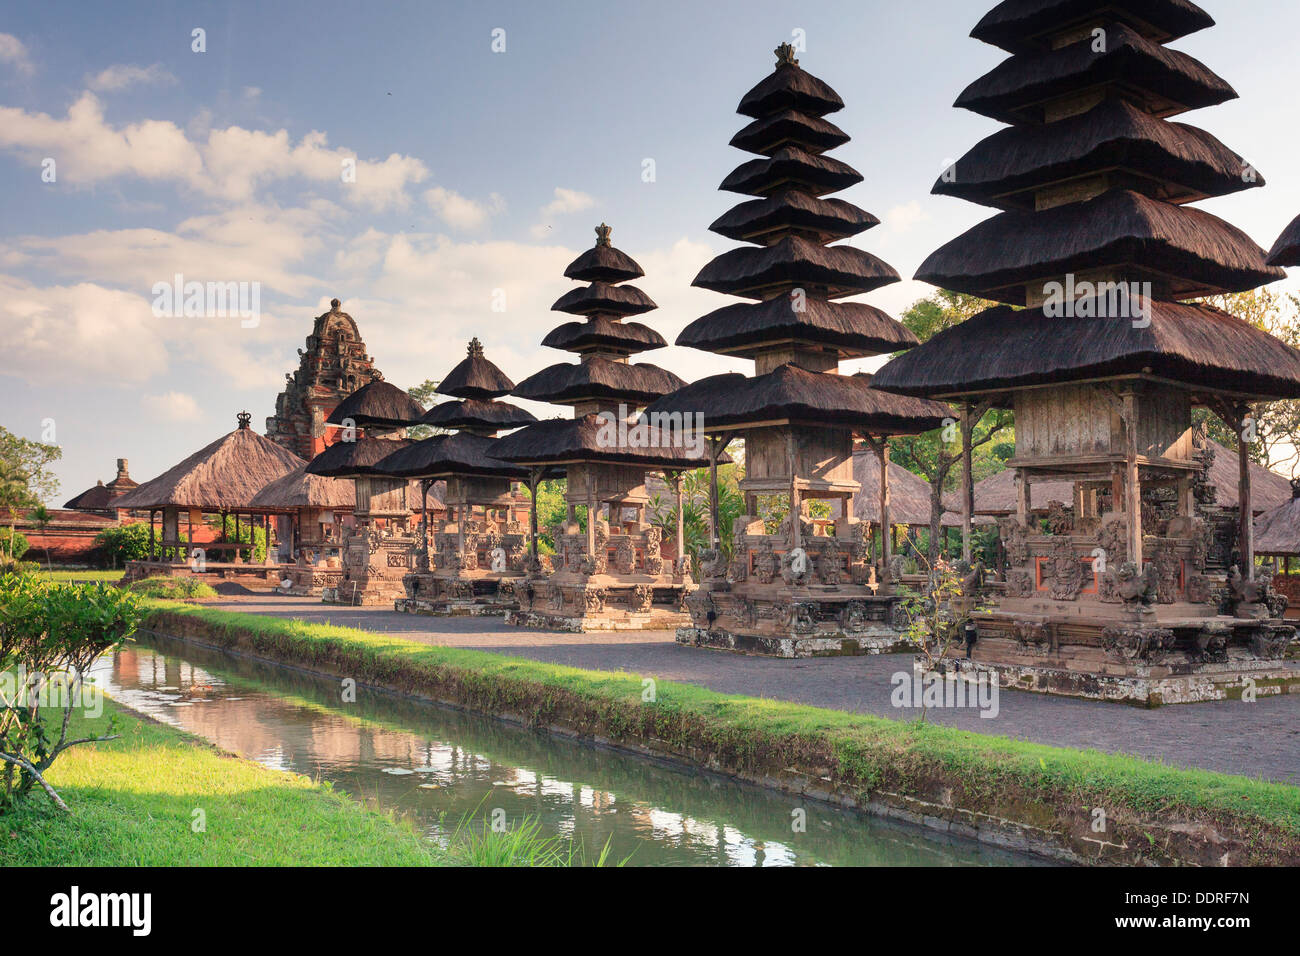 Indonesia, Bali, Taman Ayun Temple Stock Photo